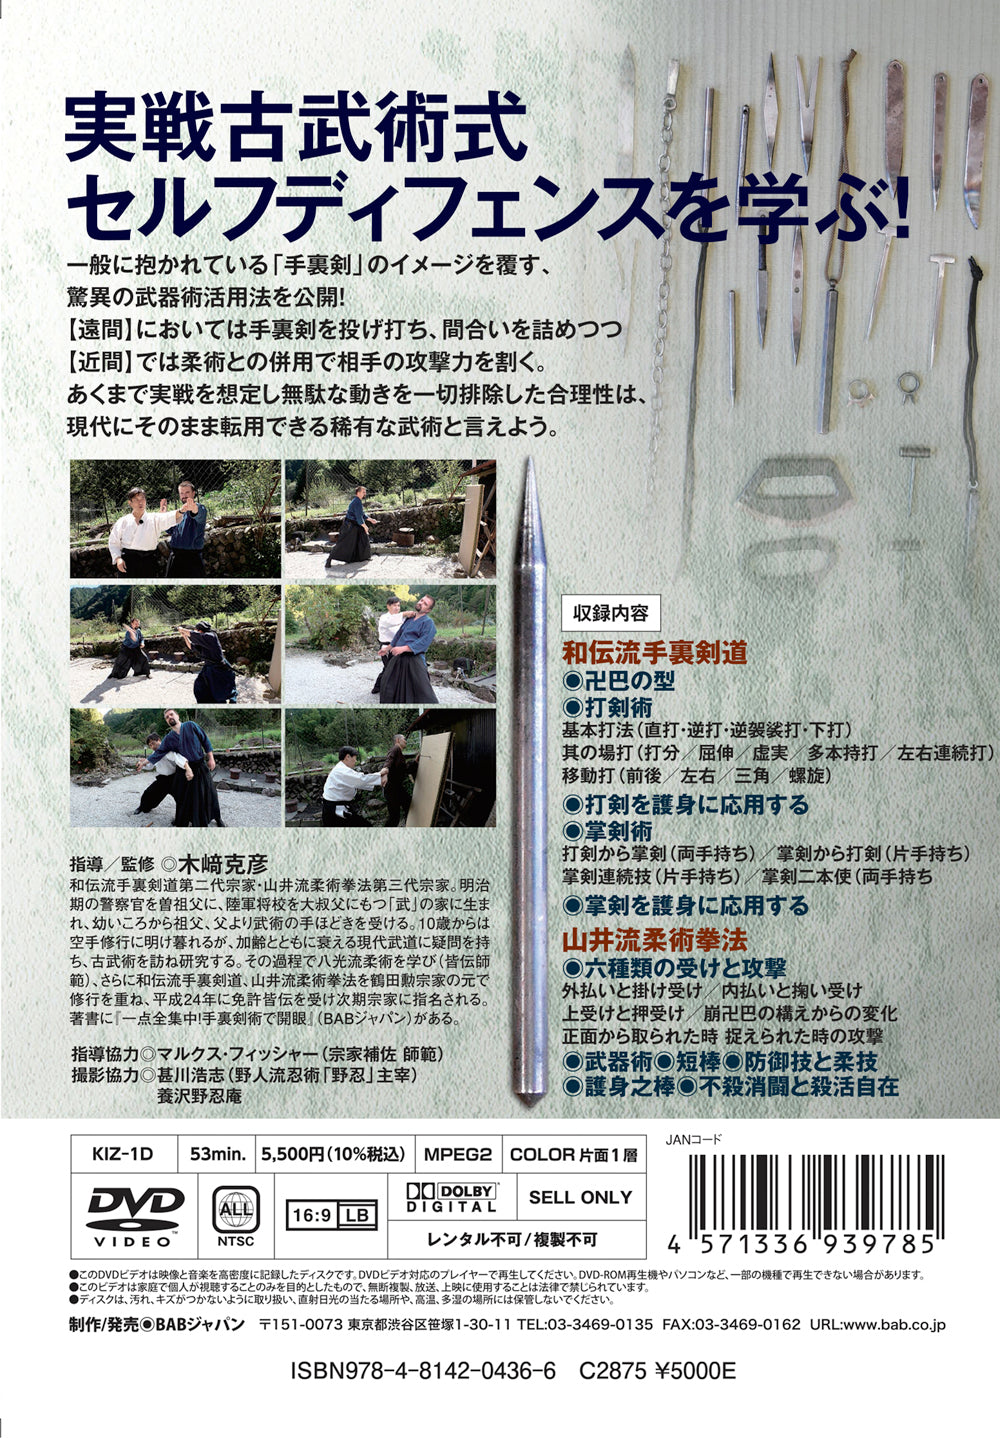 Shuriken x Jujutsu for Self Defense DVD by Katsuhiko Kizaki - Budovideos Inc